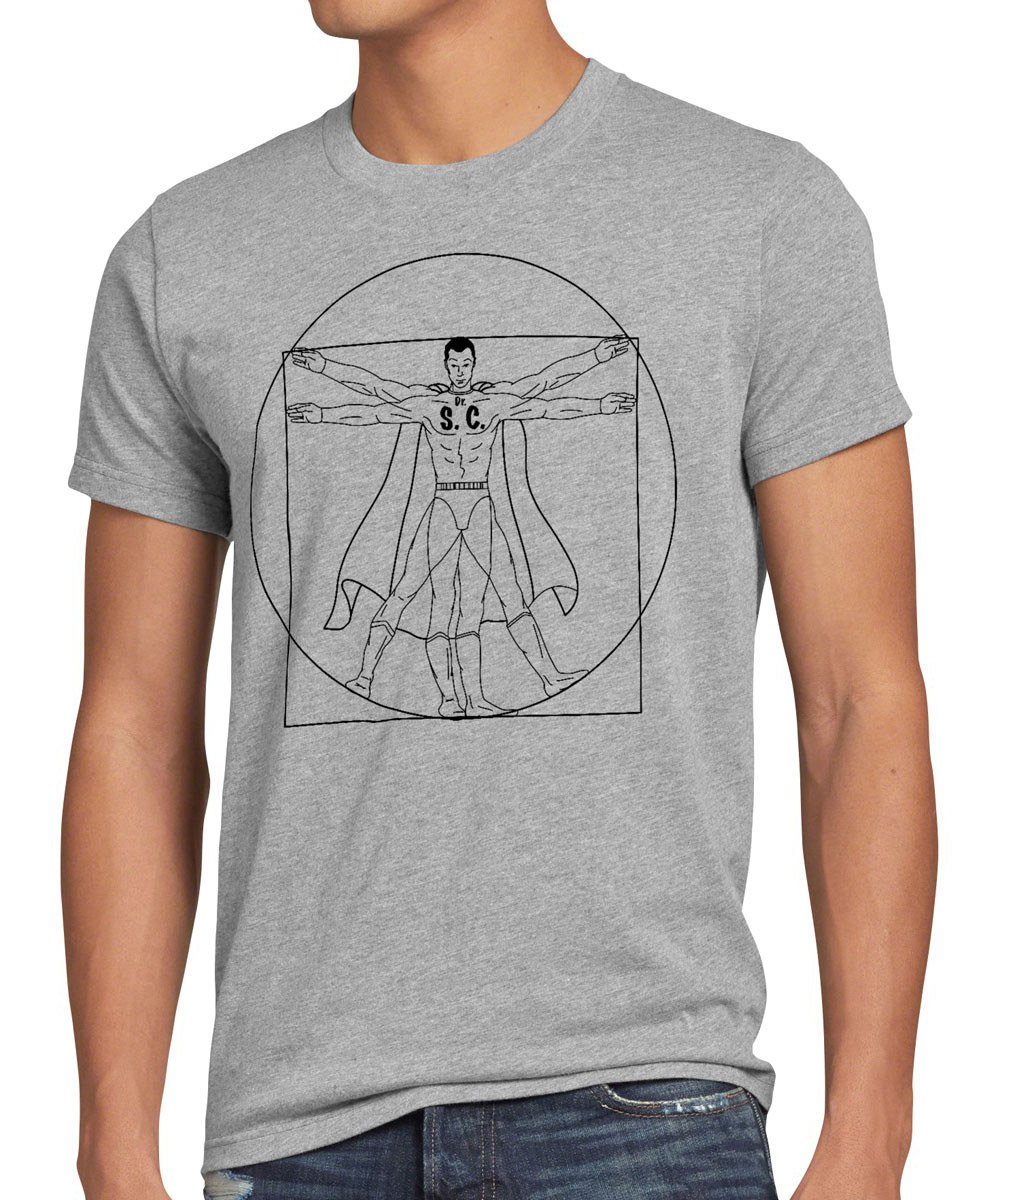 Da Herren Sheldon Vitruvianischer Cooper style3 T-Shirt Vinci grau bang Mensch Print-Shirt big meliert theory